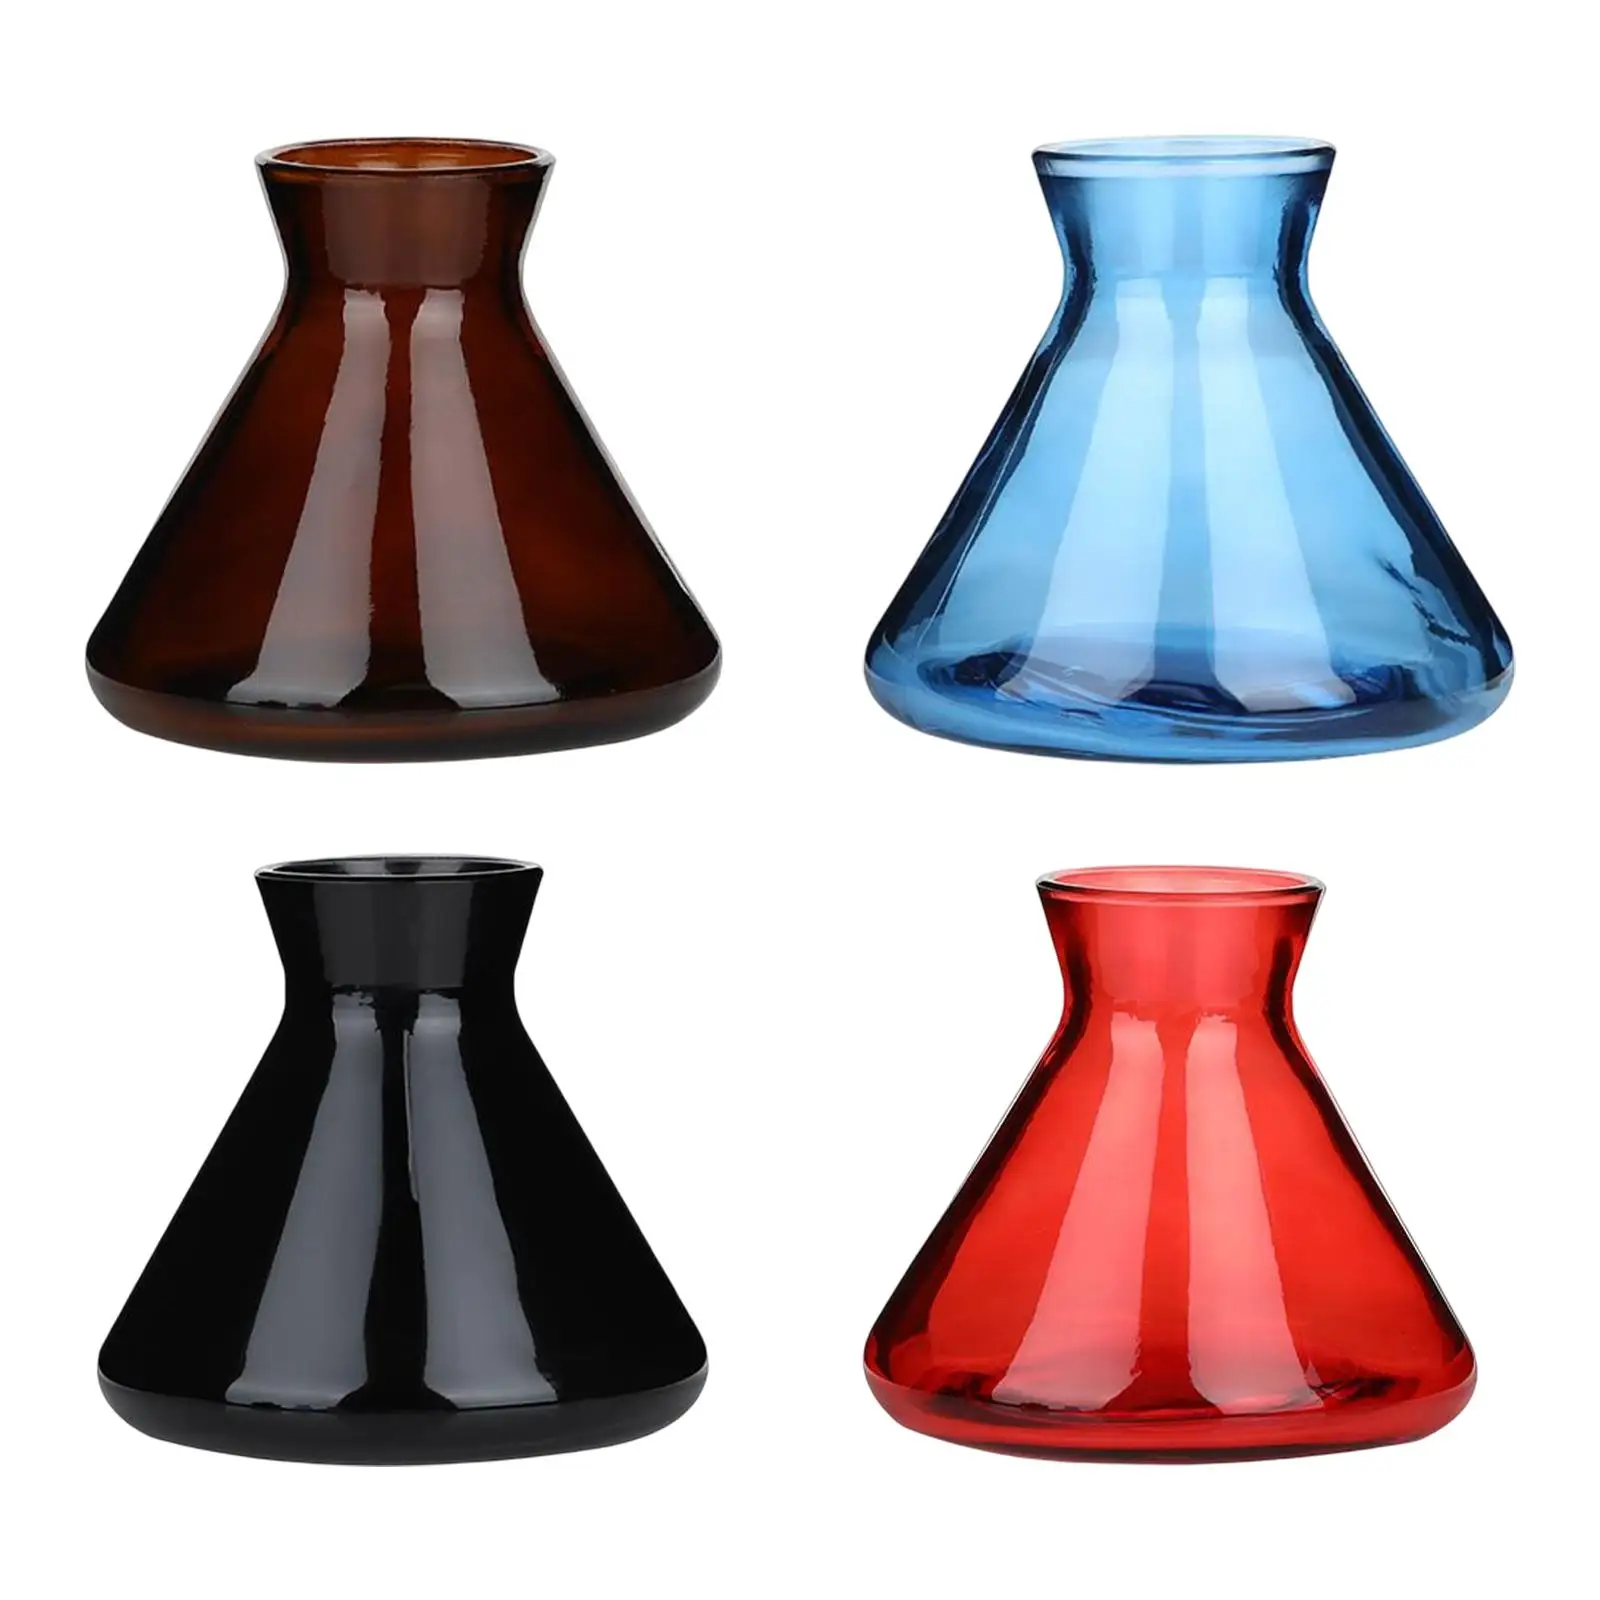 Empty Bud Vases Essential Oil Container Decorative Vase, Mini Vase Dispenser for